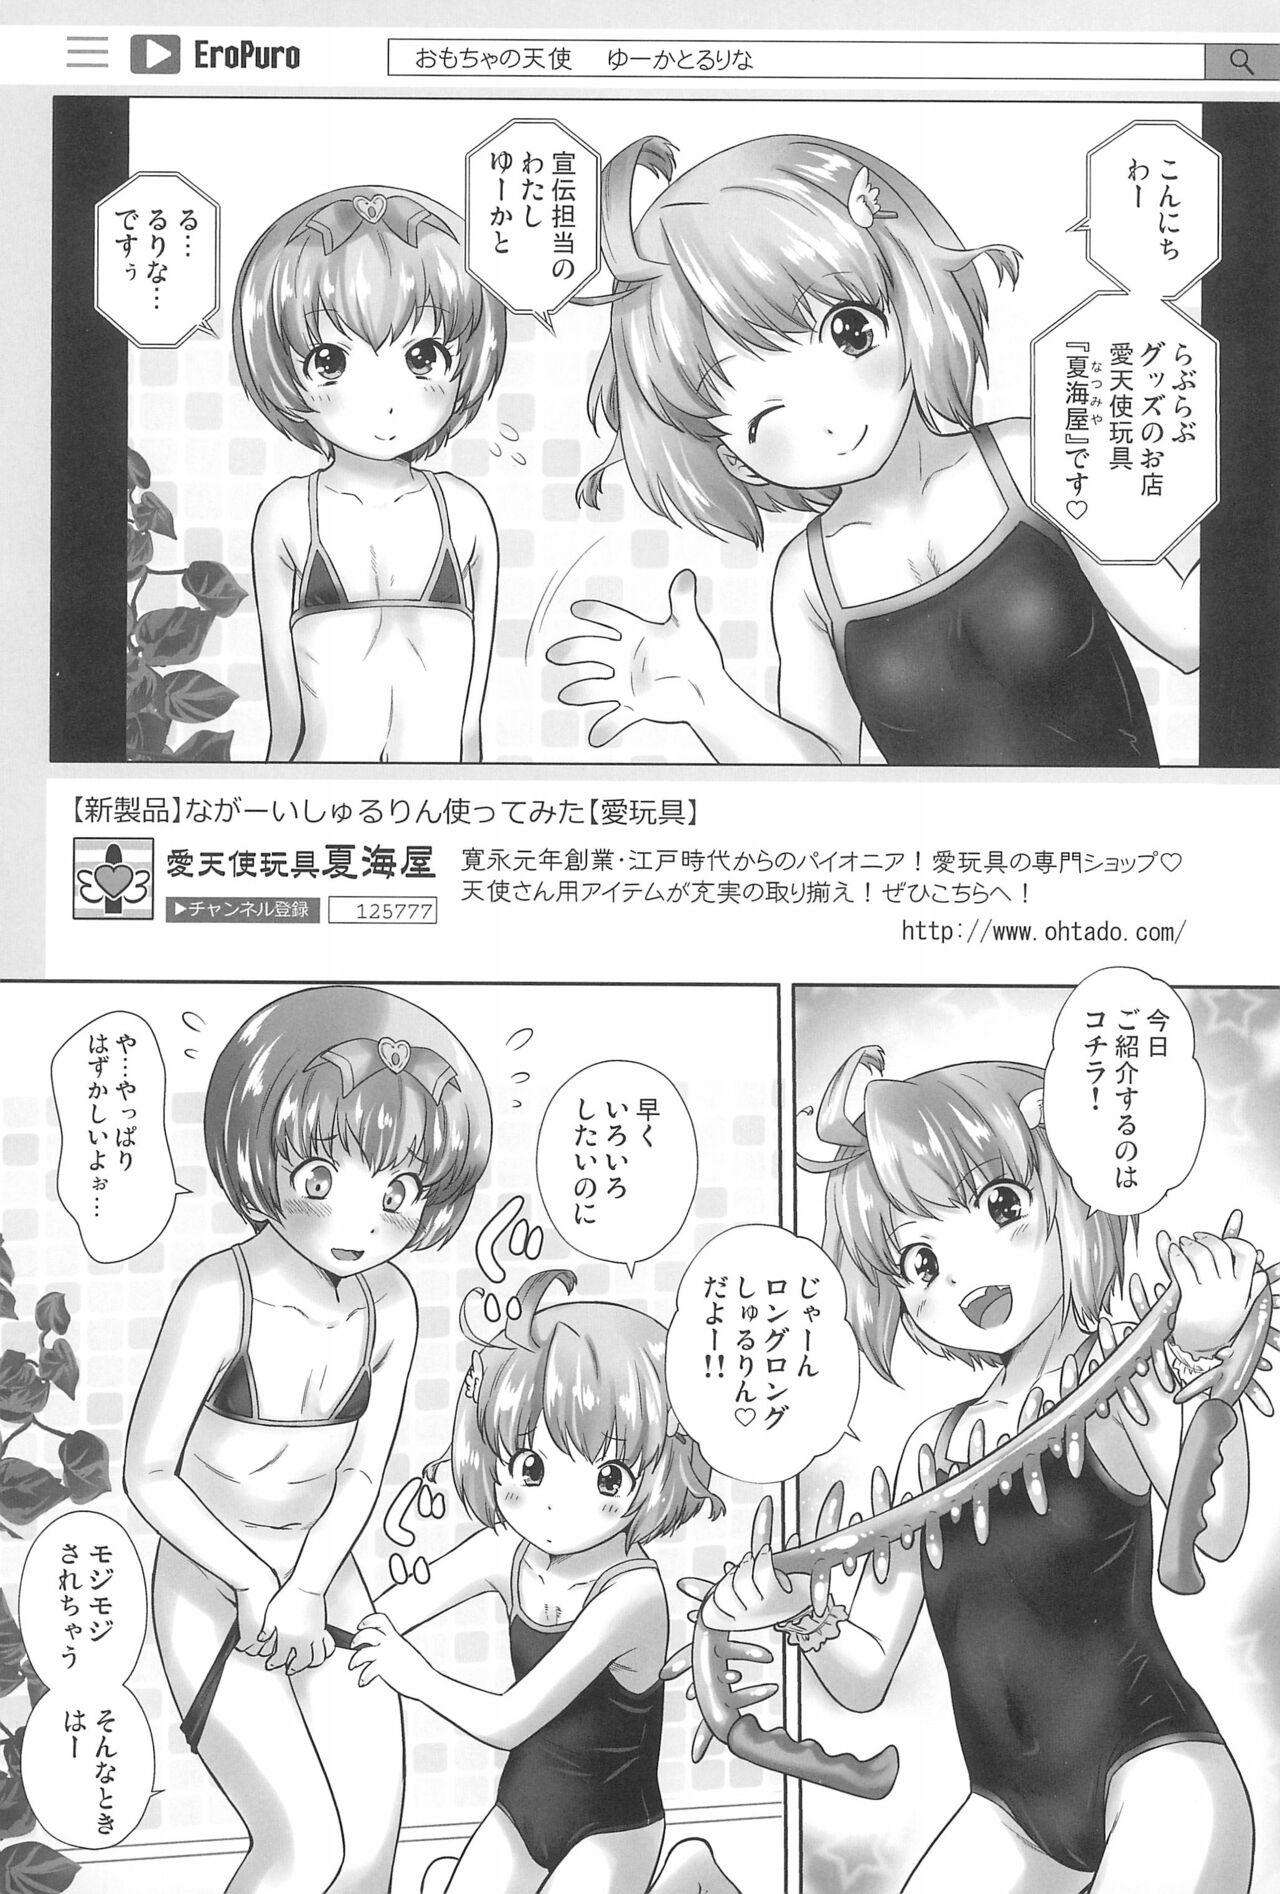 Analfuck Omocha no Tenshi Yuka to Rurina - Original Stranger - Page 3